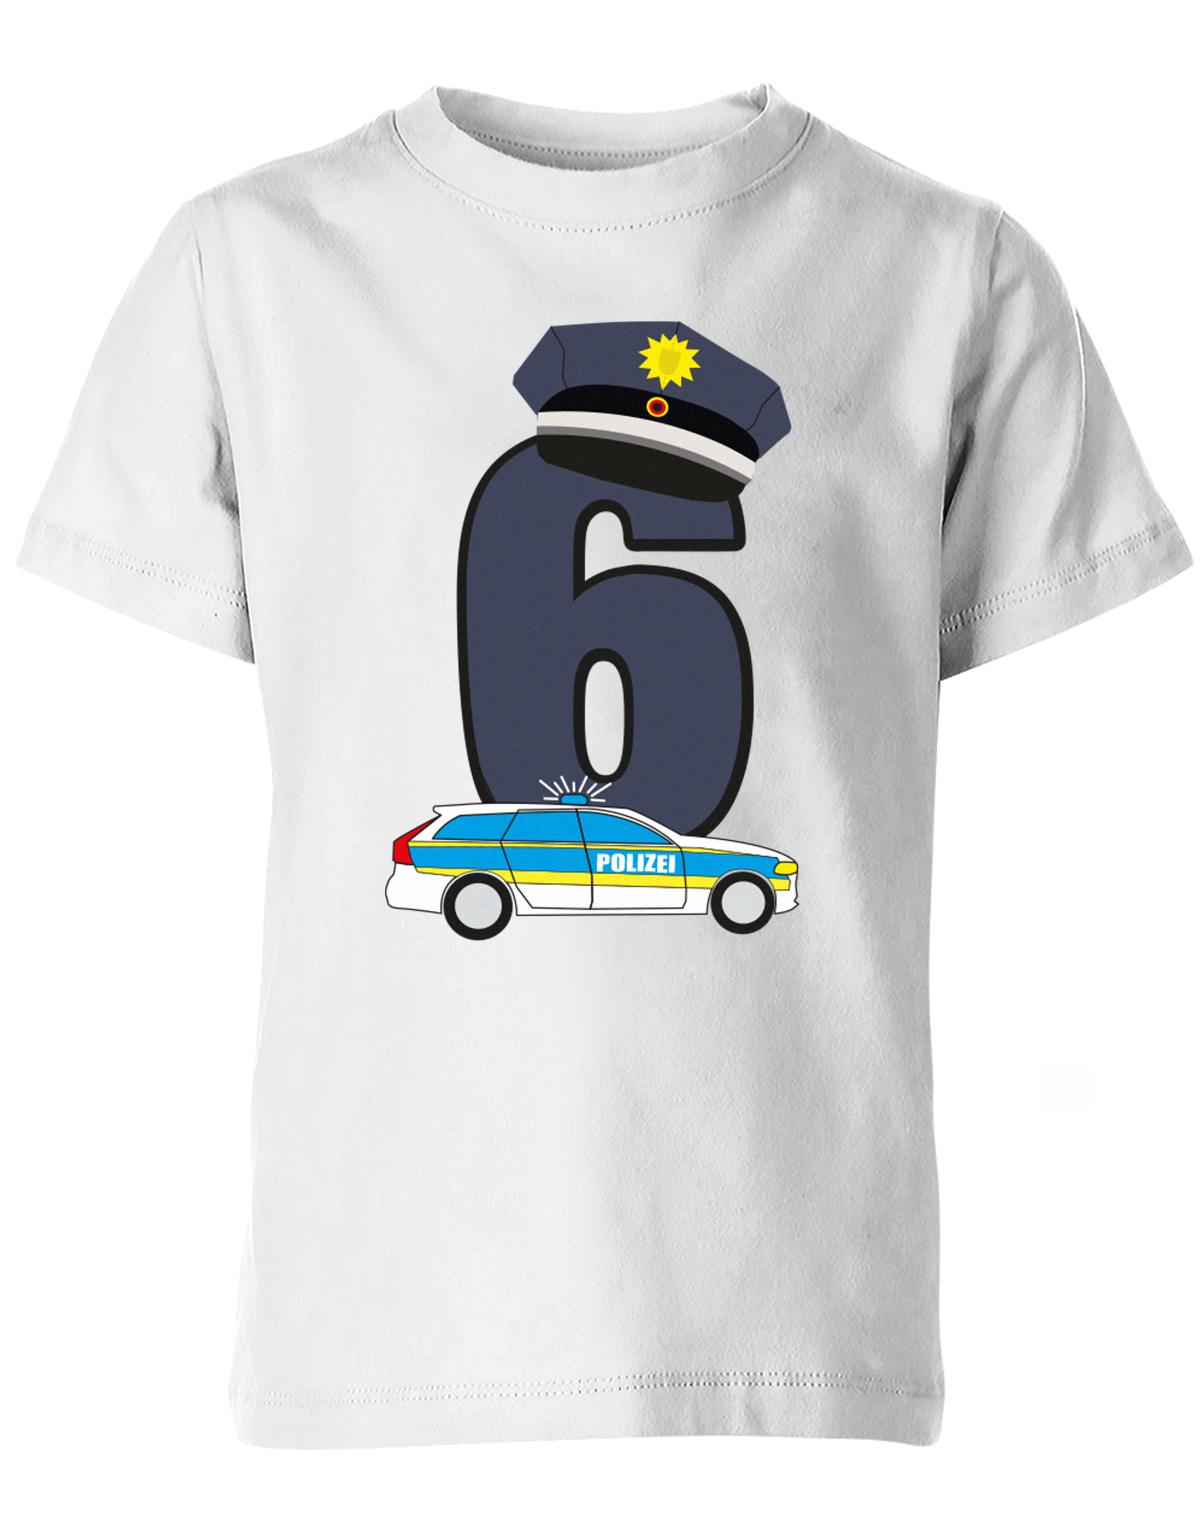 ich-bin-6-polizei-geburtstag-kinder-shirt-weiss